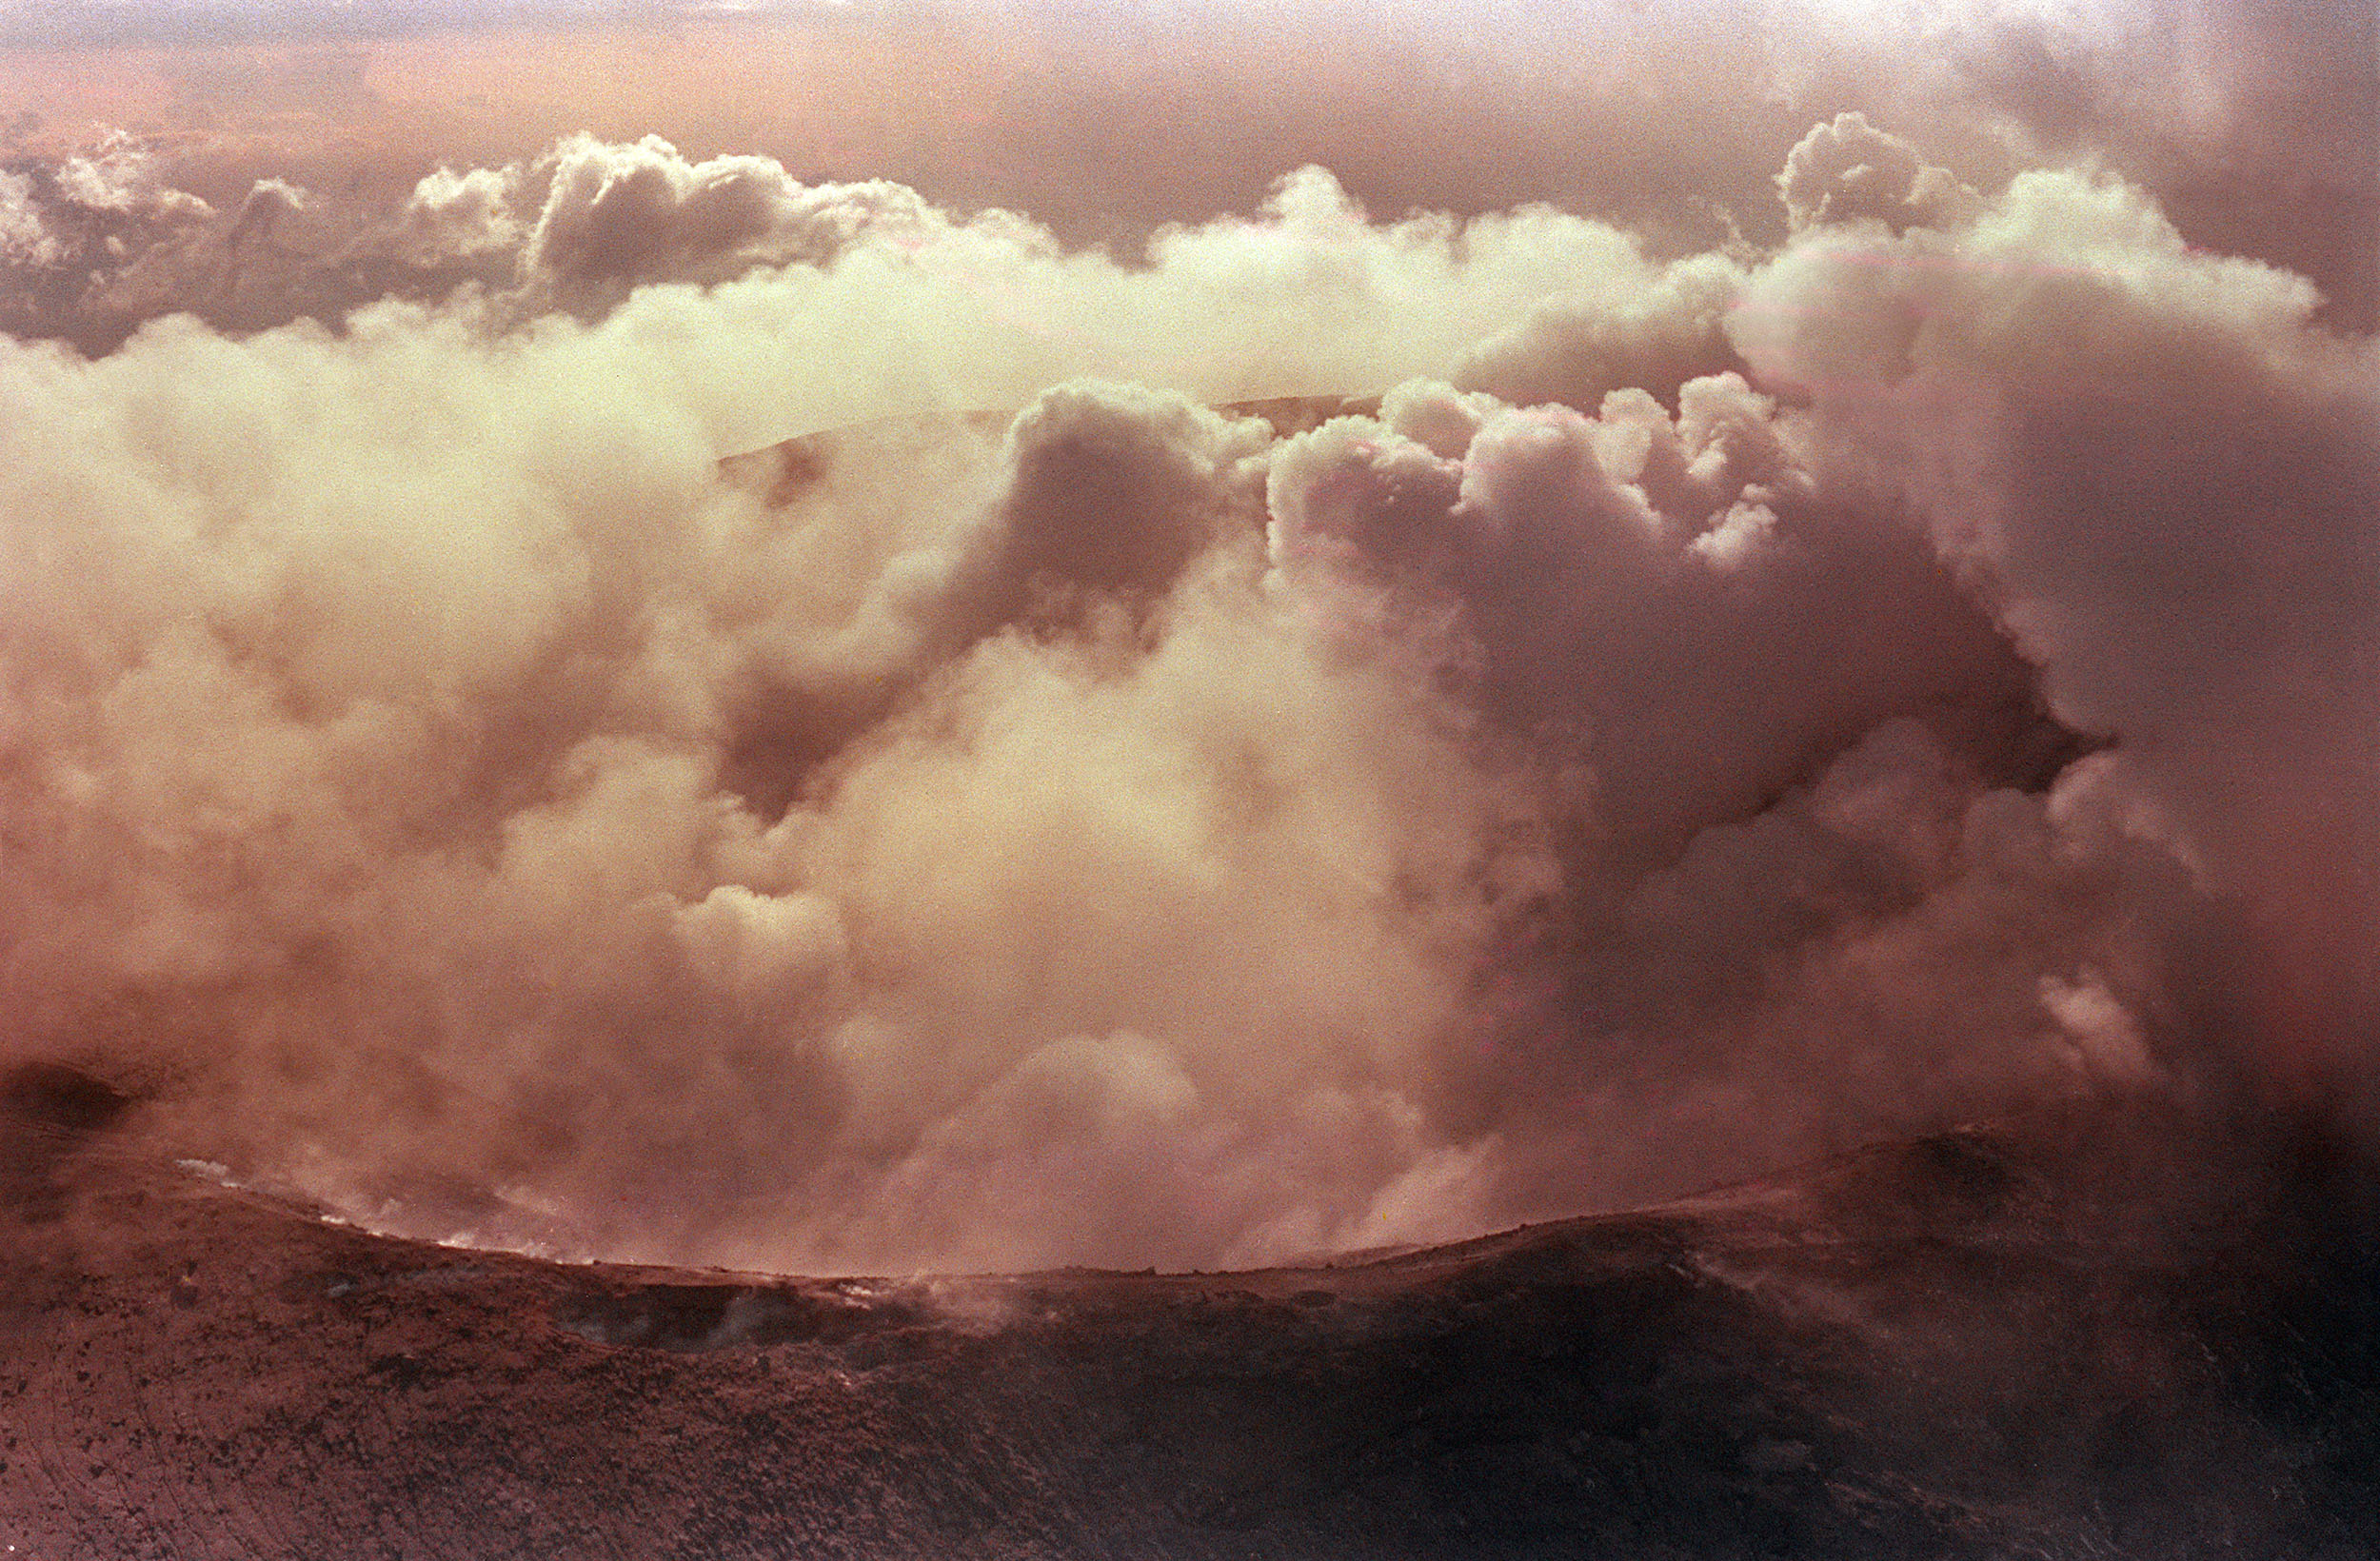 Beim Ausbruch des Vulkans Nevado del Ruiz in Kolumbien im Jahr 1985 kamen etwa 25.000 Menschen ums Leben und 14 Gemeinden wurden vollständig zerstört